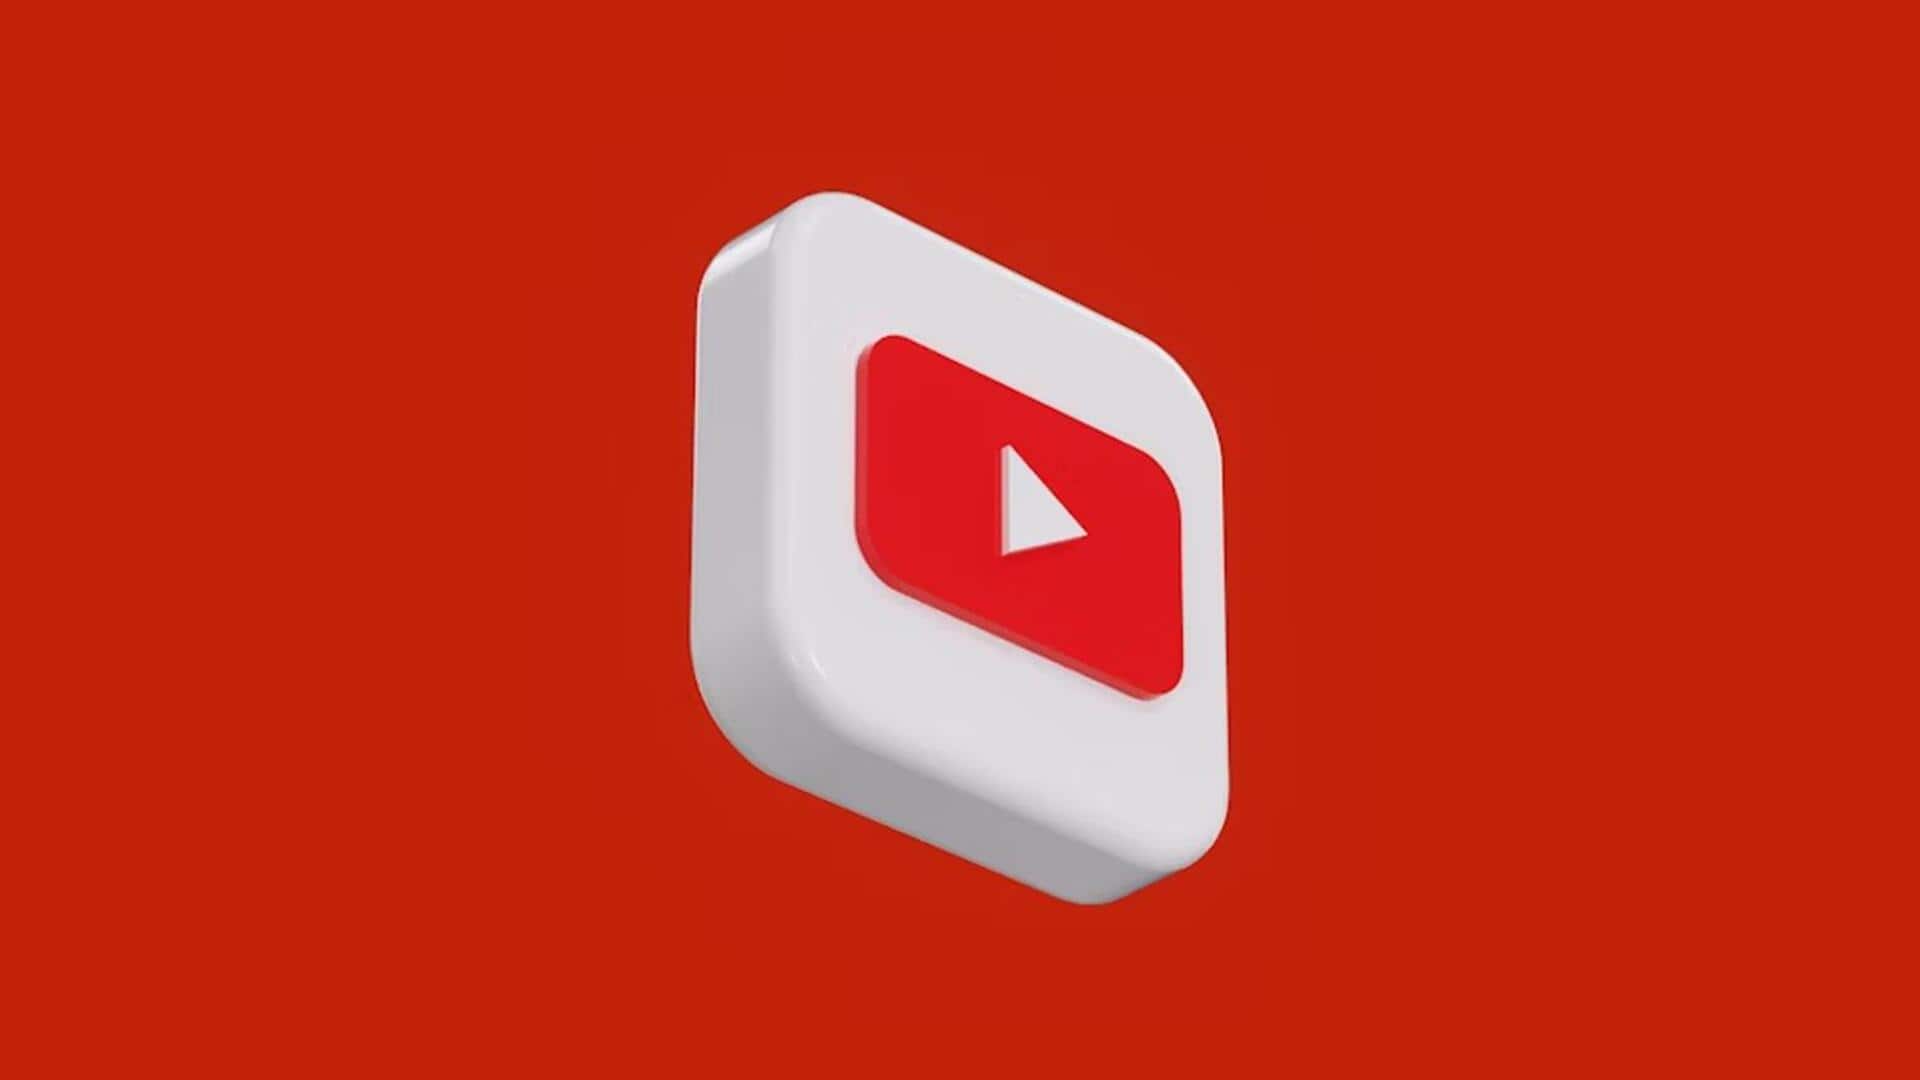 एड-ब्लॉकर के खिलाफ यूट्यूब की कार्रवाई तेज, यूजर्स नहीं देख पा रहे वीडियो